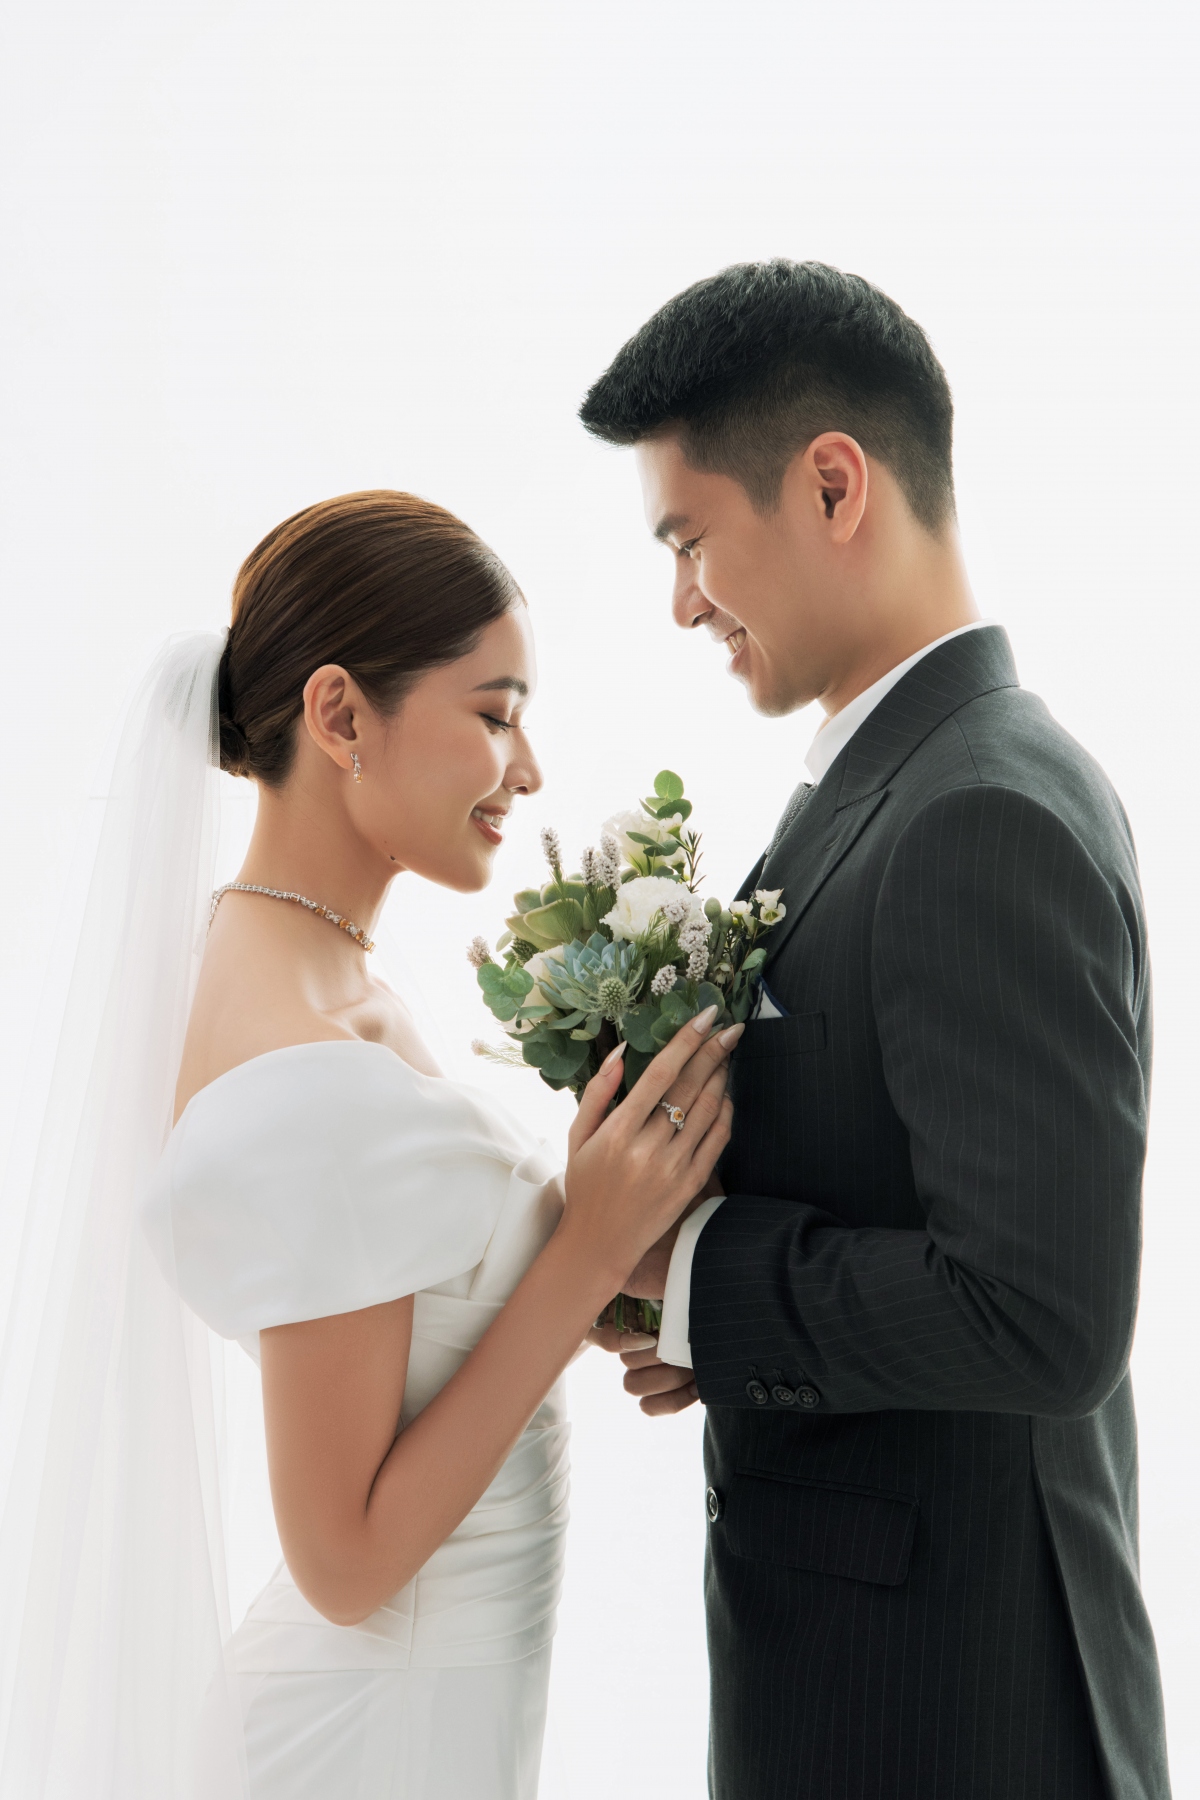 Ảnh cưới đơn giản của Á hậu Thùy Dung và bạn trai doanh nhân - Ảnh 5.